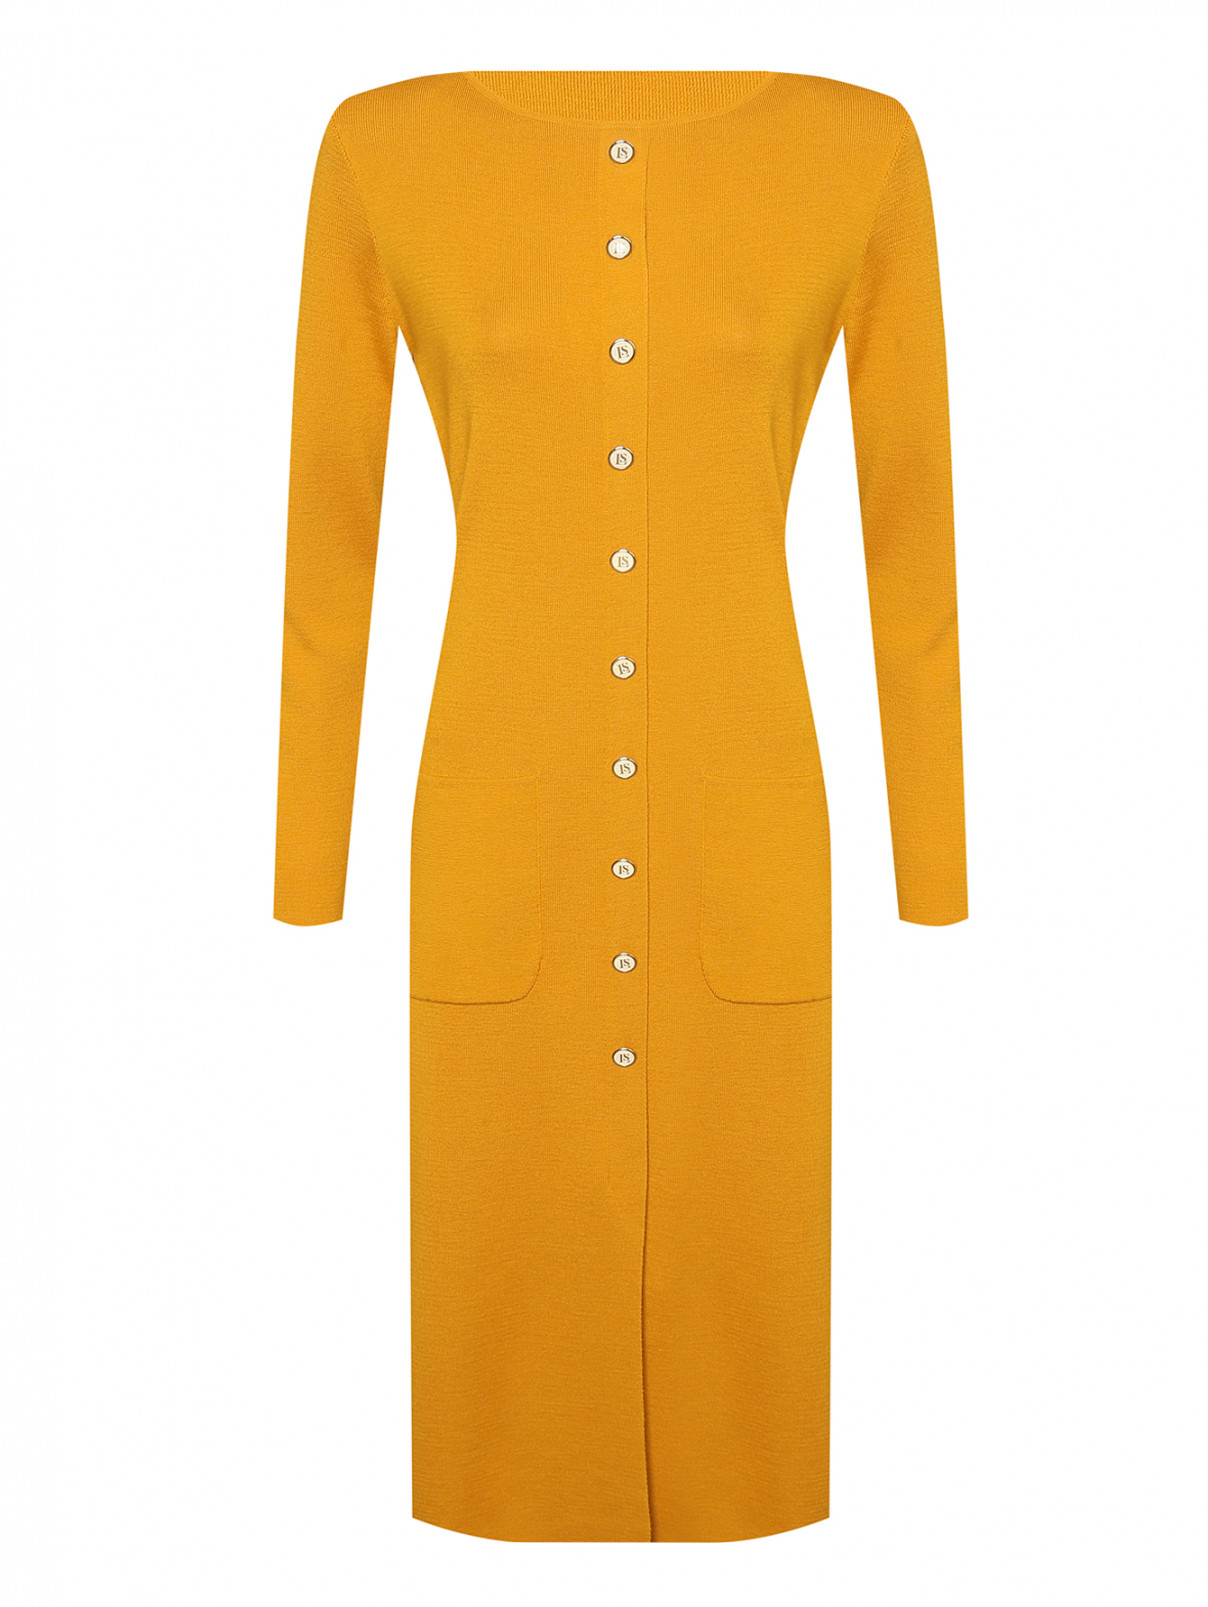 Трикотажное платье из шерсти с золотой фурнитурой Luisa Spagnoli  –  Общий вид  – Цвет:  Оранжевый